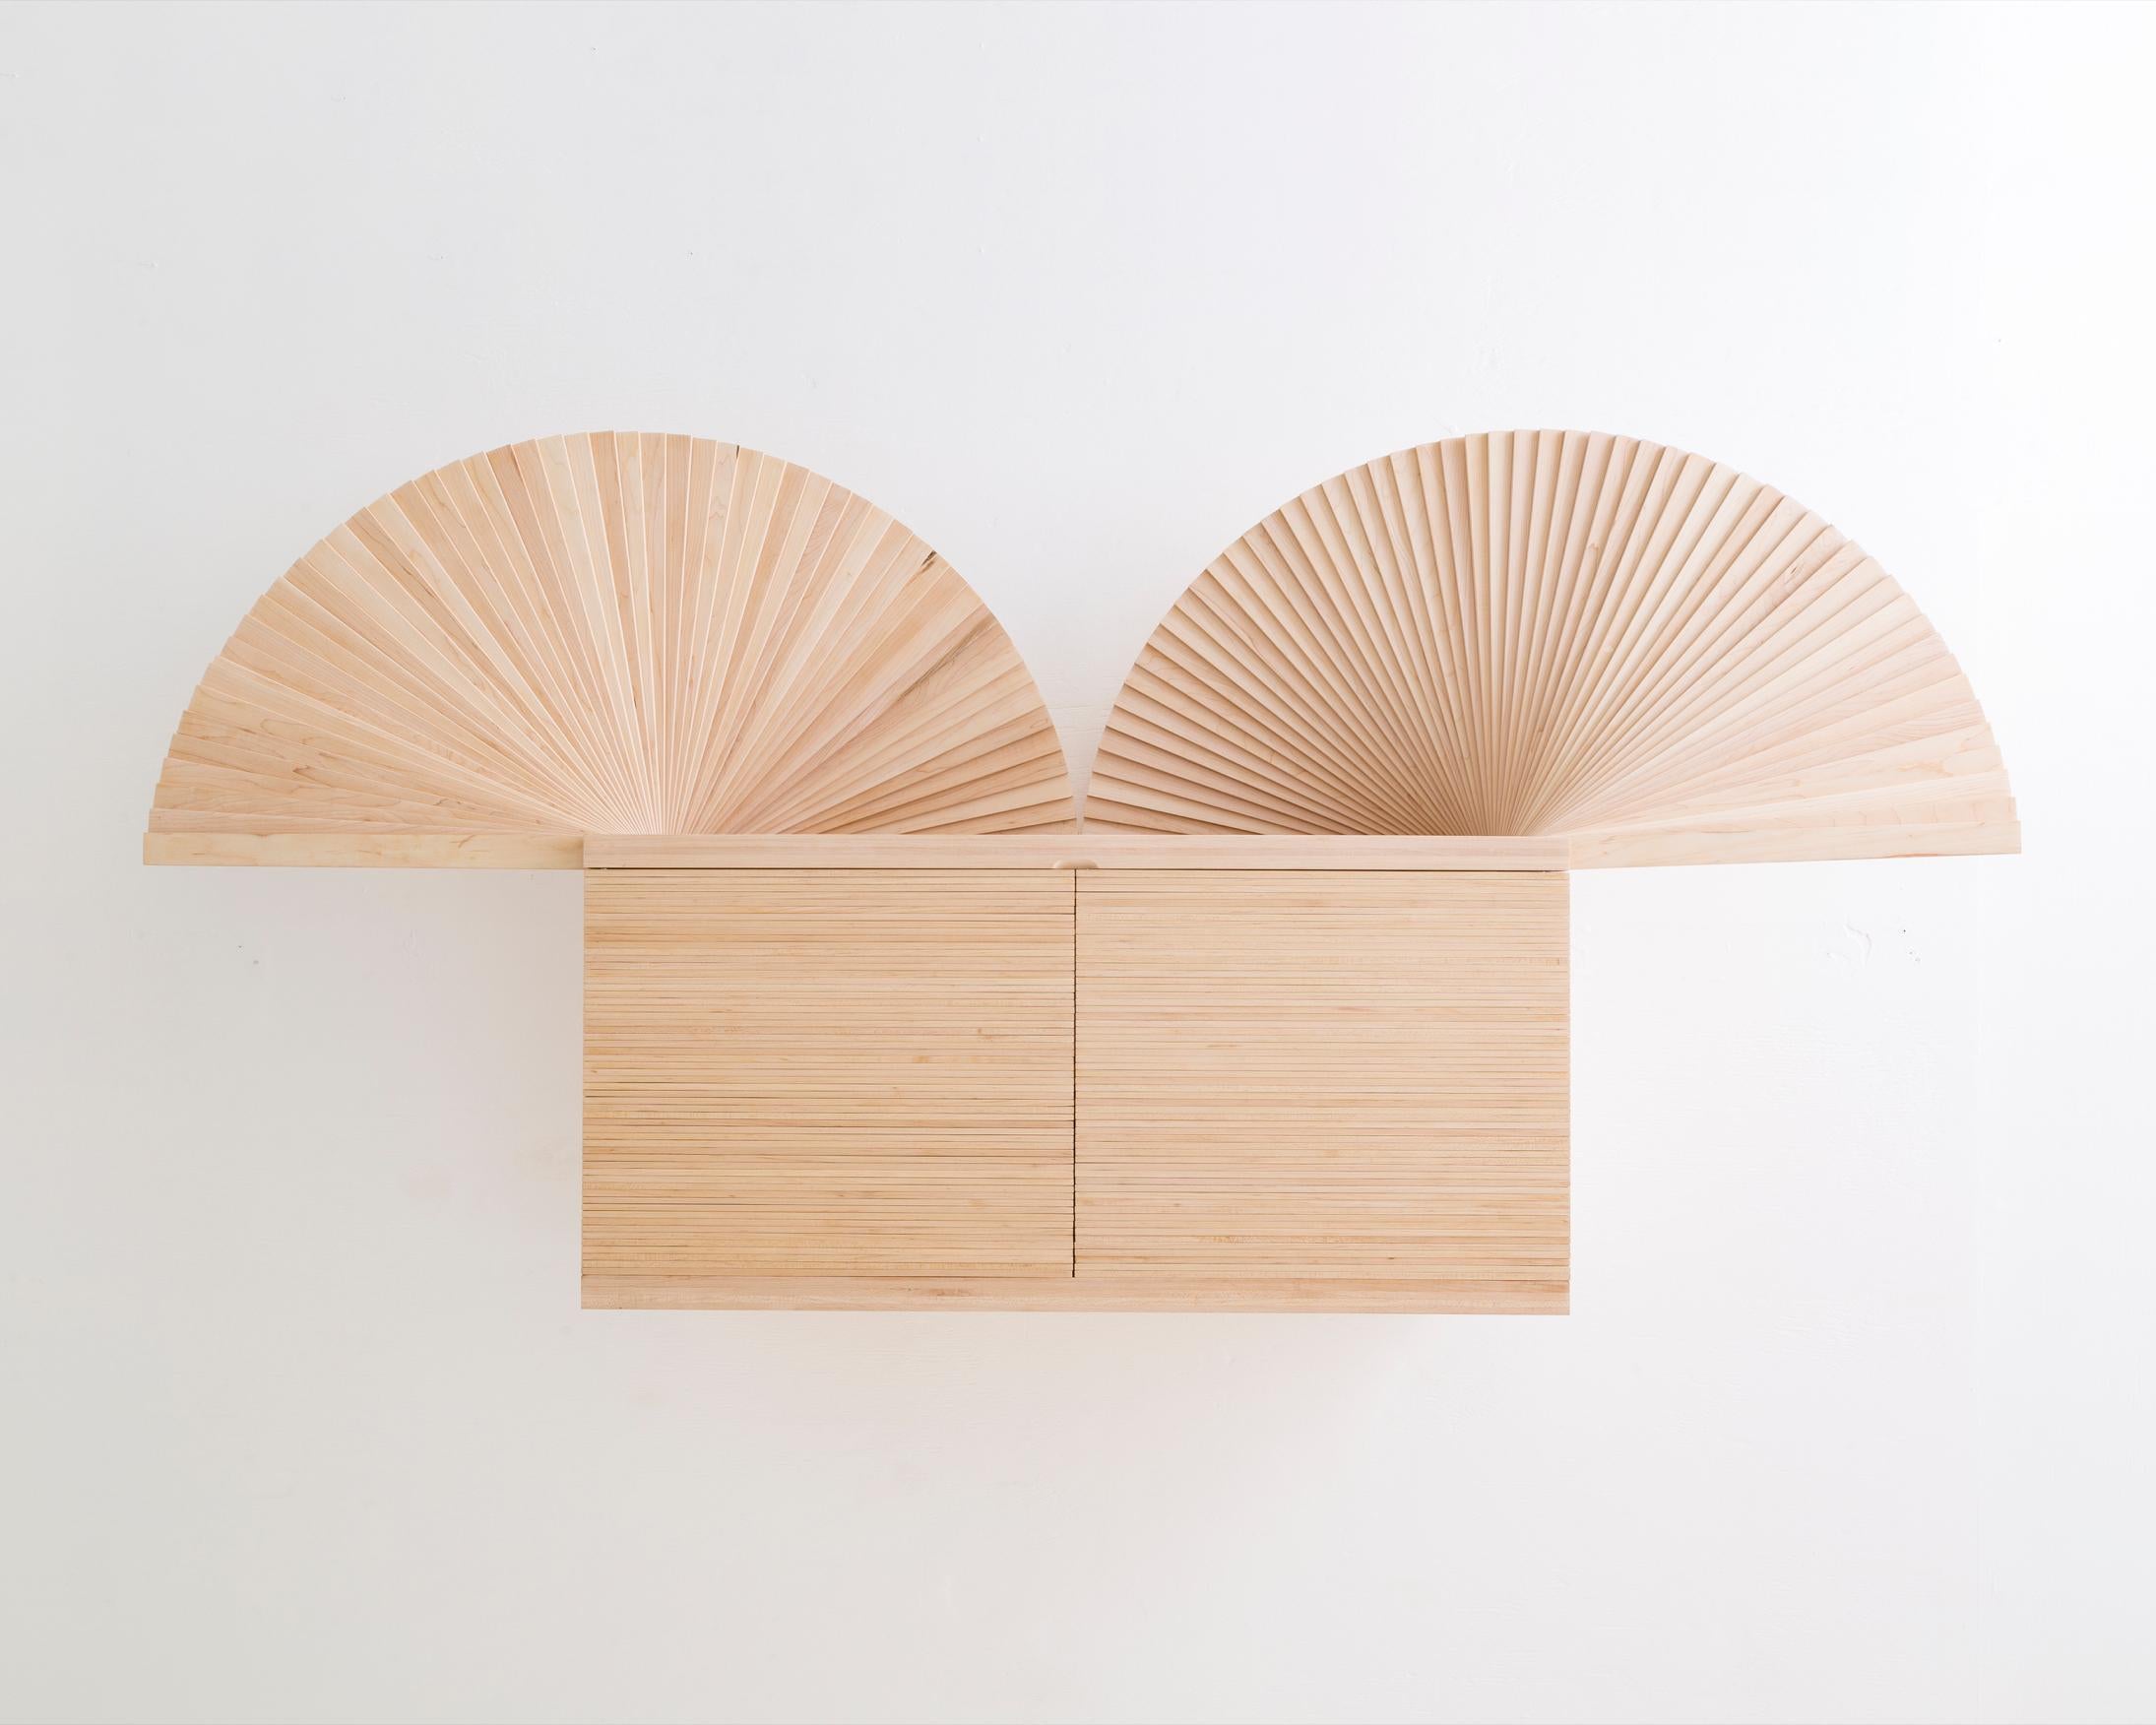 Modern Fan Cabinet in Wood and Metal Elements by Sebastian ErraZuriz, 2018 For Sale